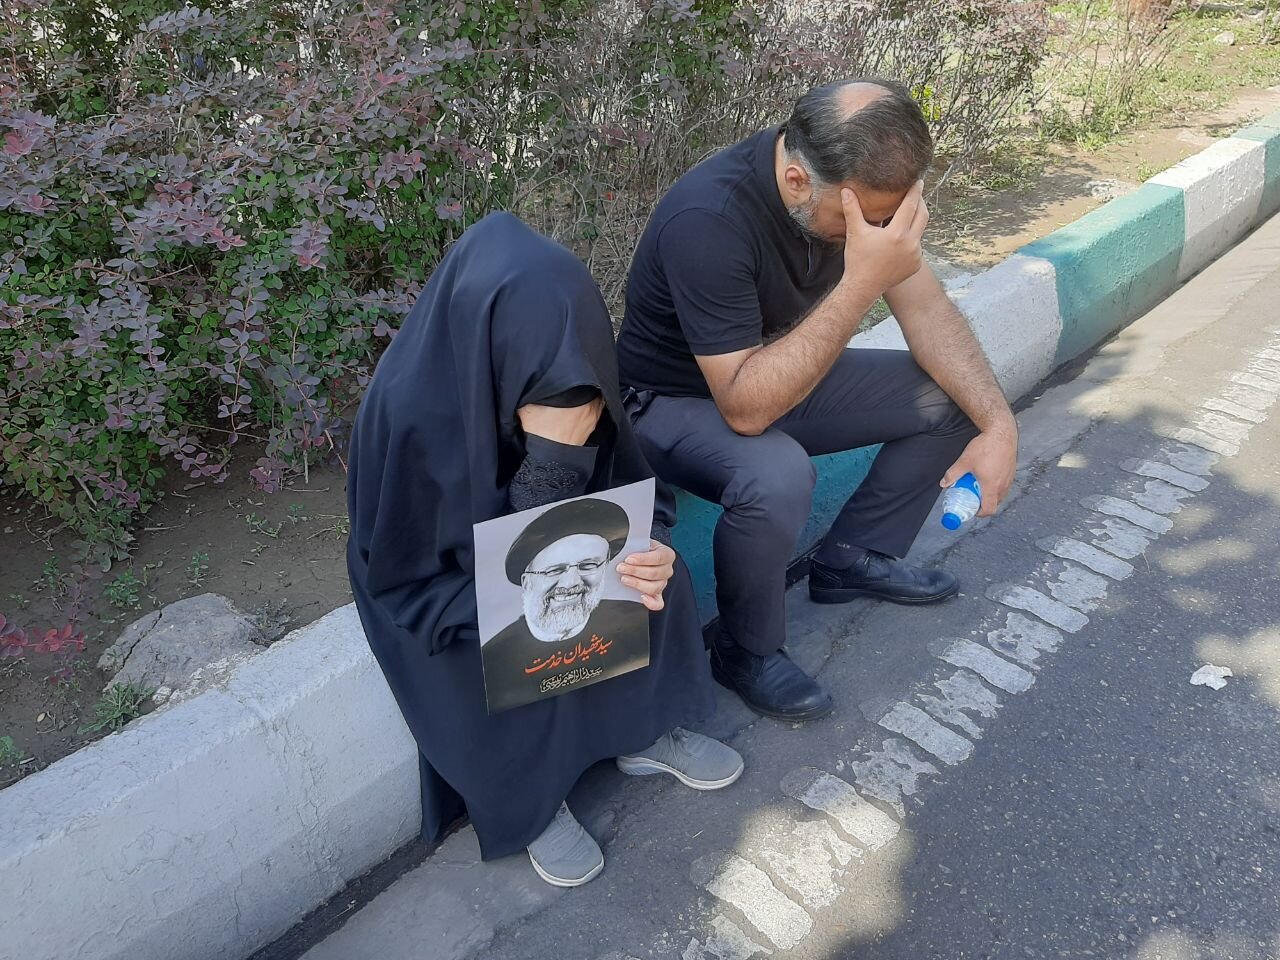 تہران: شہدائے خدمت کے جسدہائے خاکی عوام کے آغوش میں، ہر آنکھ اشکبار